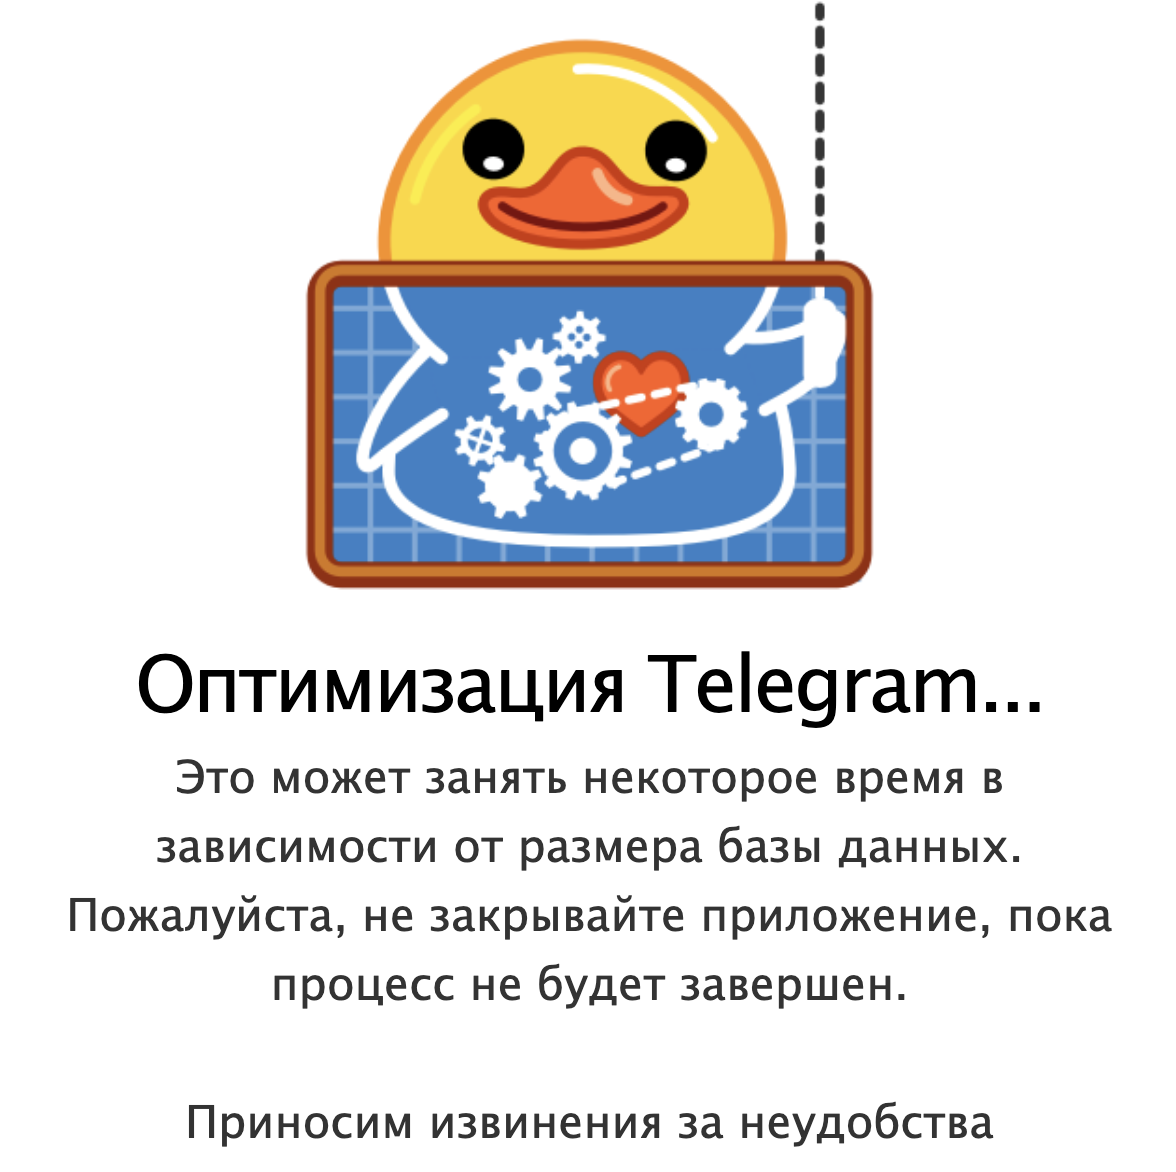 Языки в телеграмме скачать милые фото 82